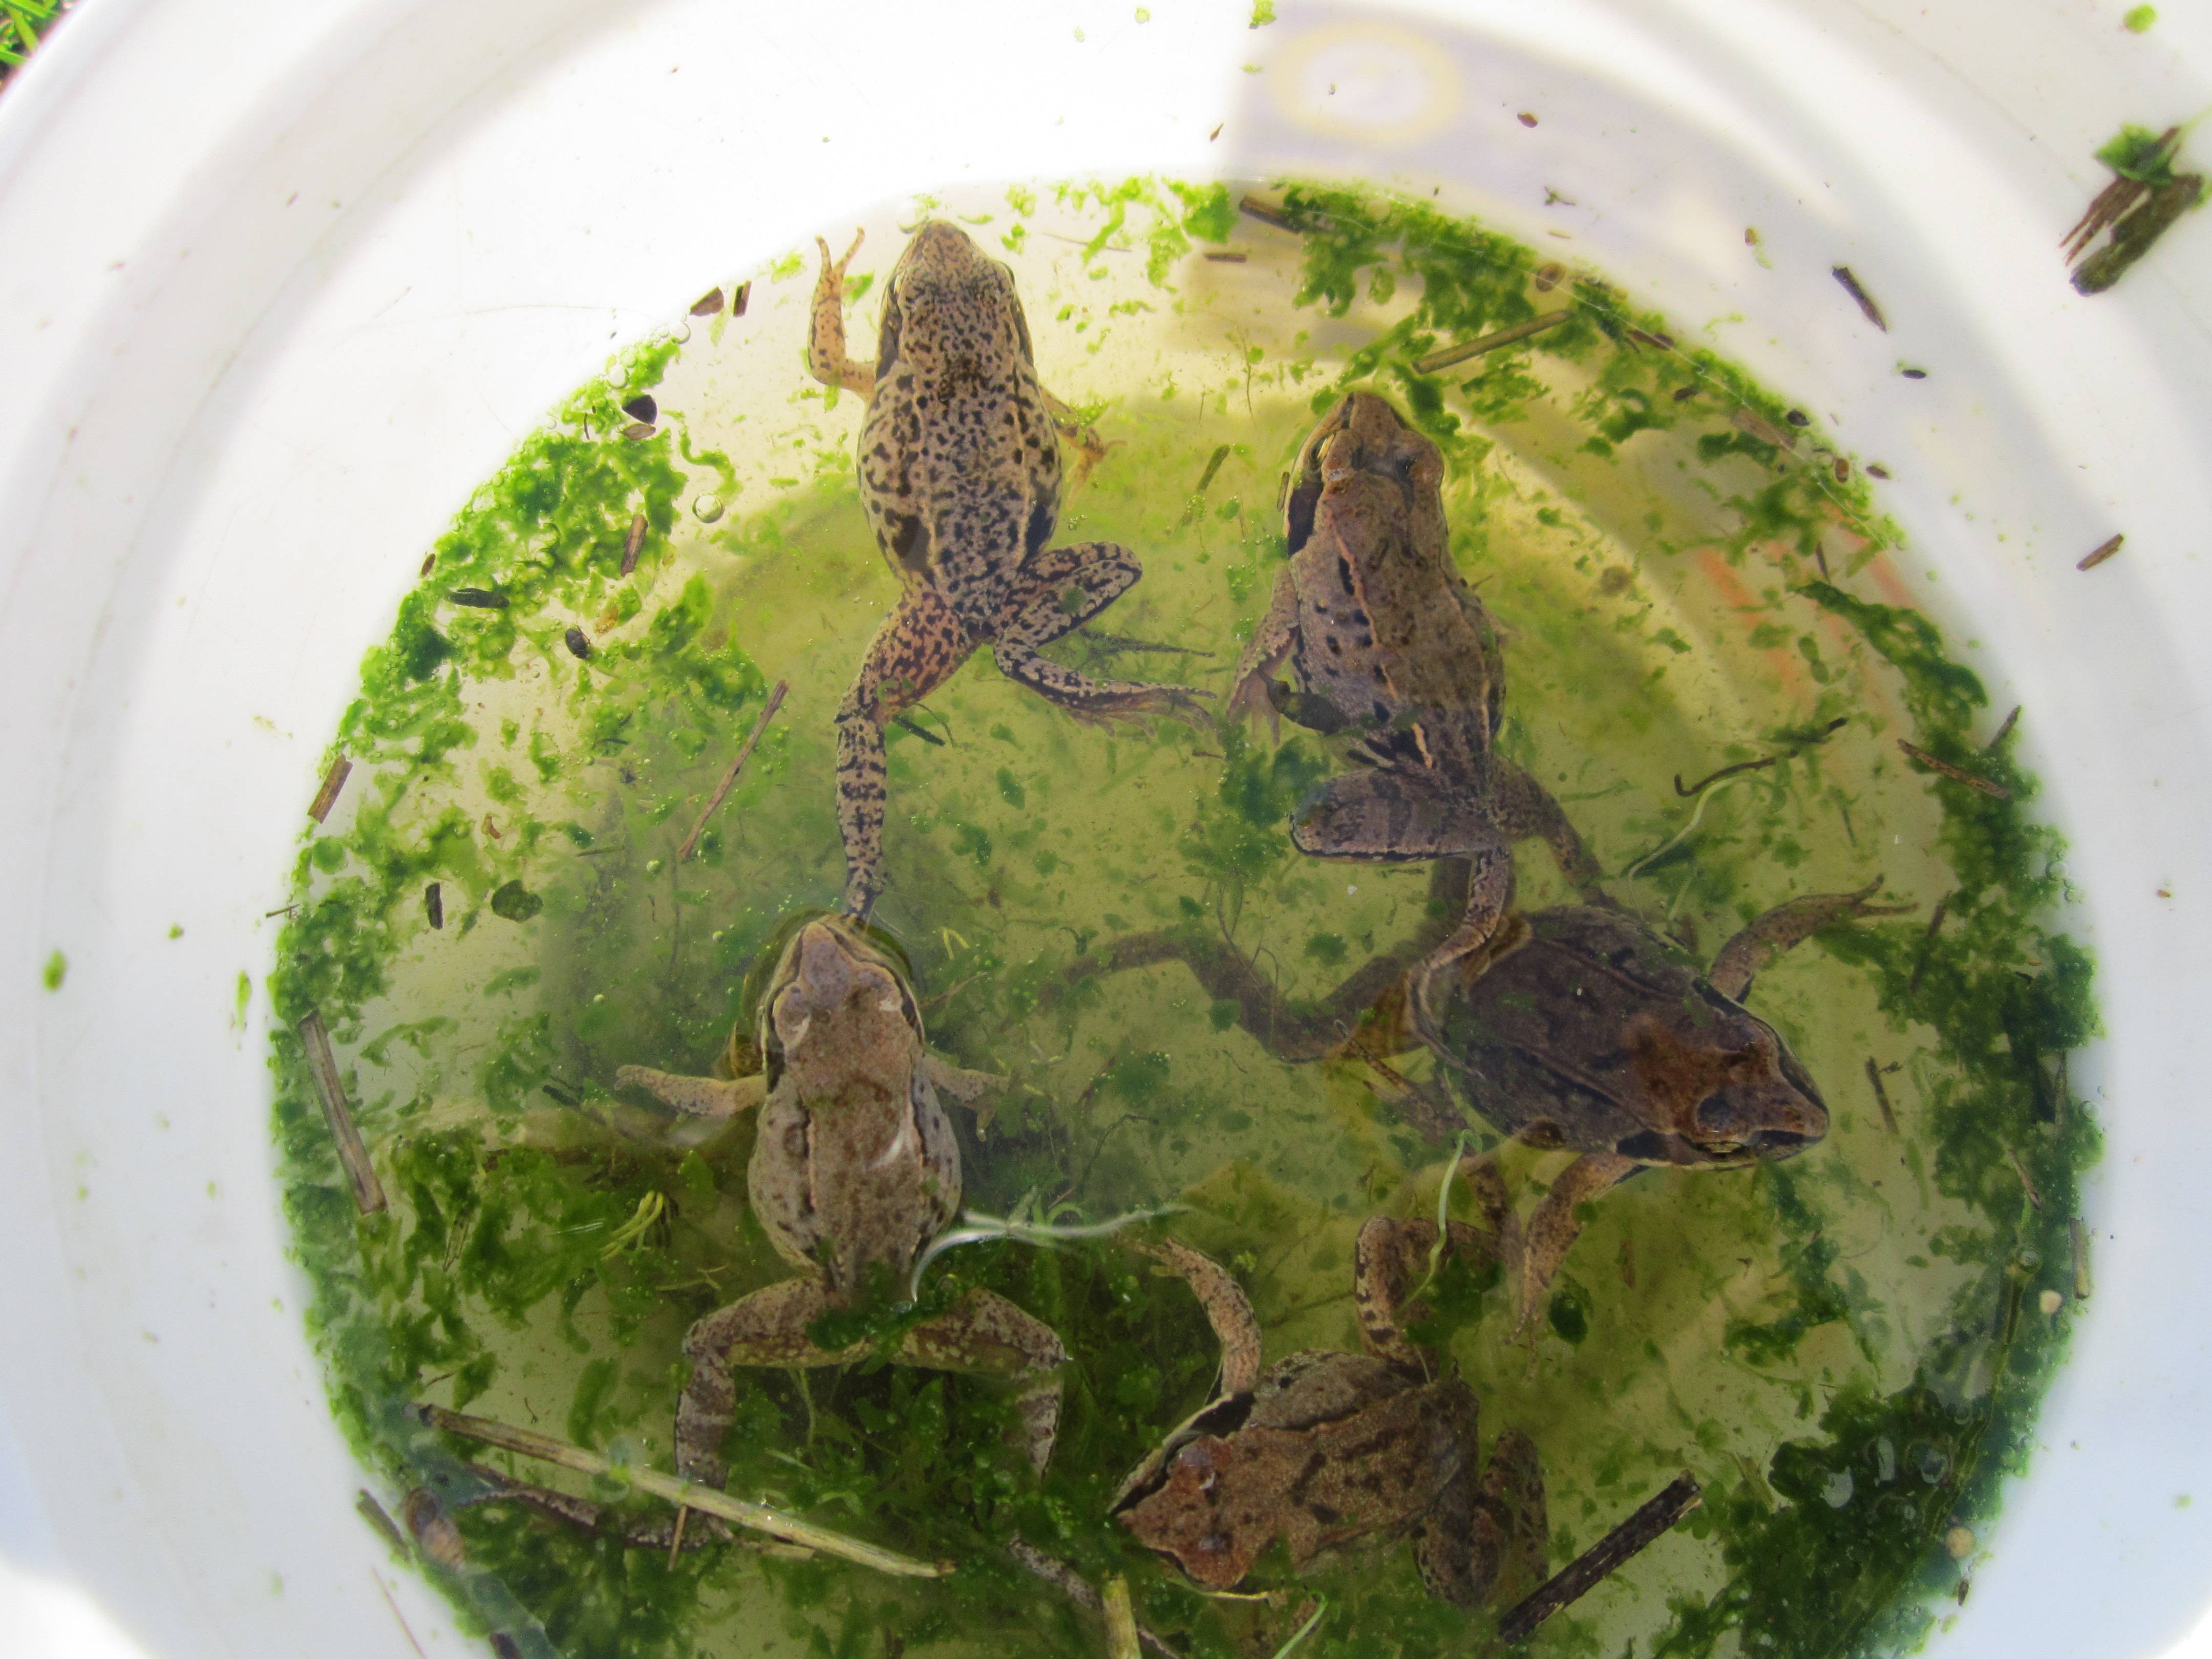 Аквариумные лягушки: виды, содержание, болезни и совместимость